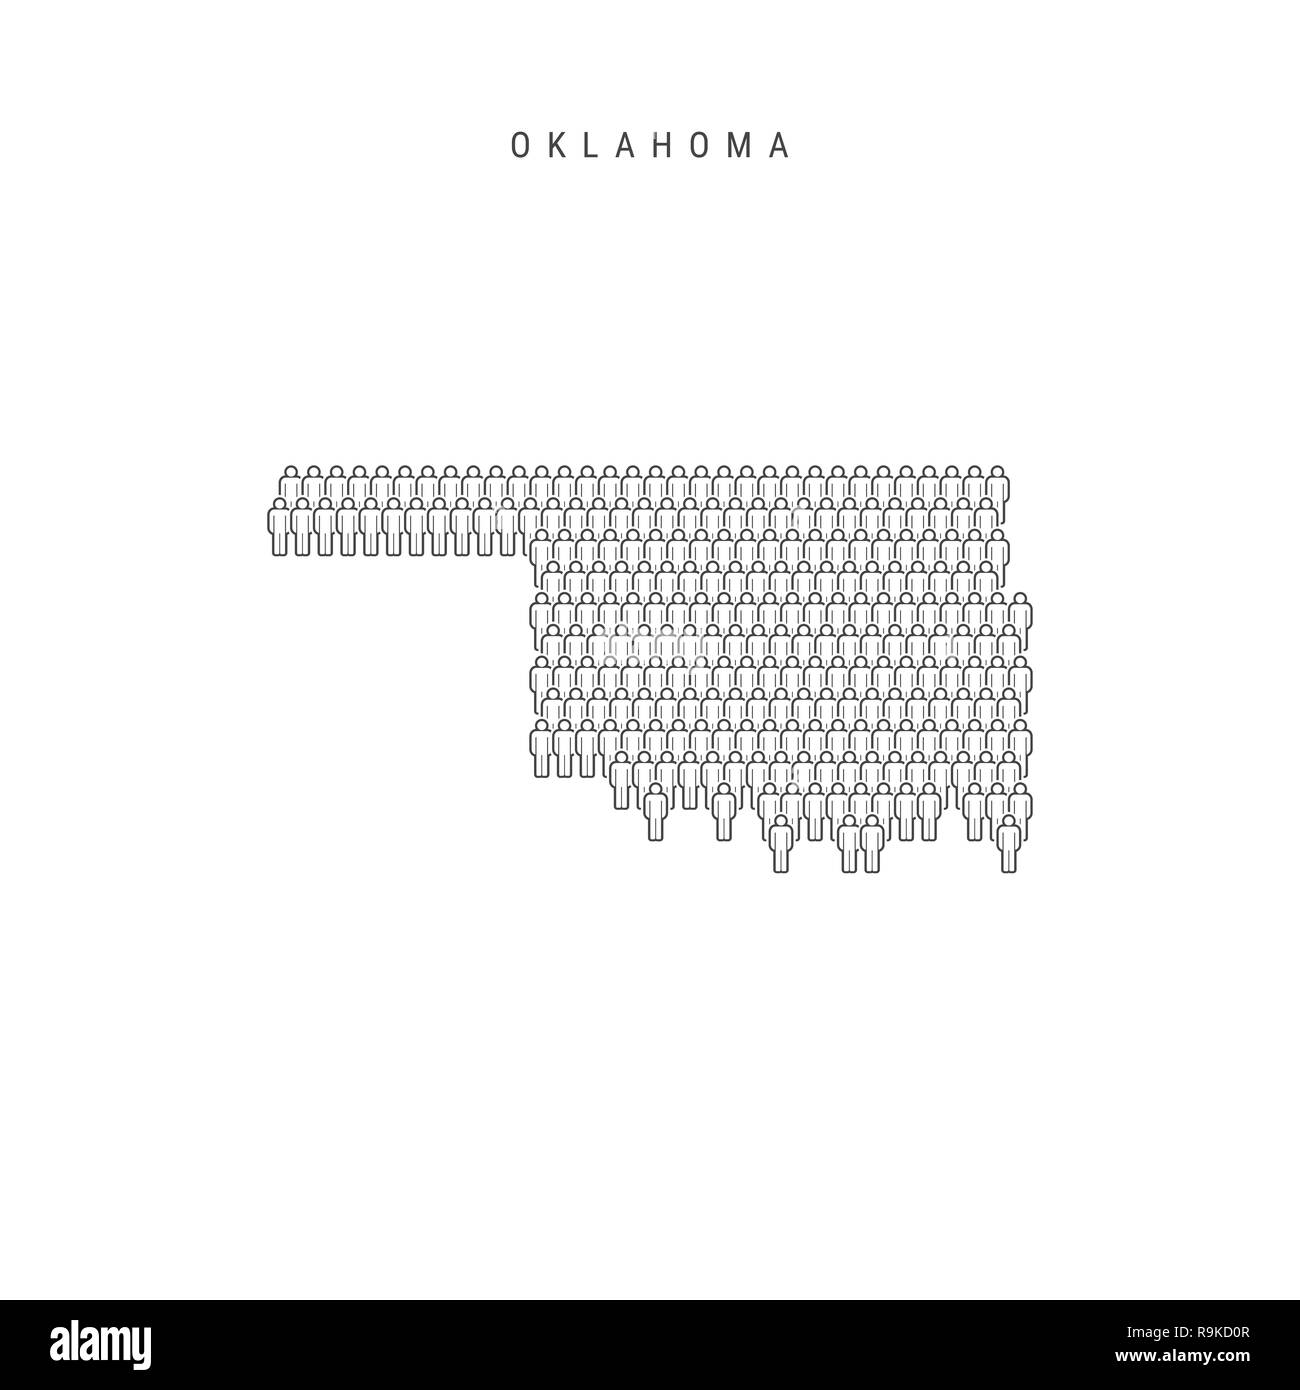 Leute Karte von Oklahoma, US-Staat. Stilisierte Silhouette, Leute in der Form einer Karte von Oklahoma. Oklahoma Bevölkerung. Abbildung isoliert auf W Stockfoto